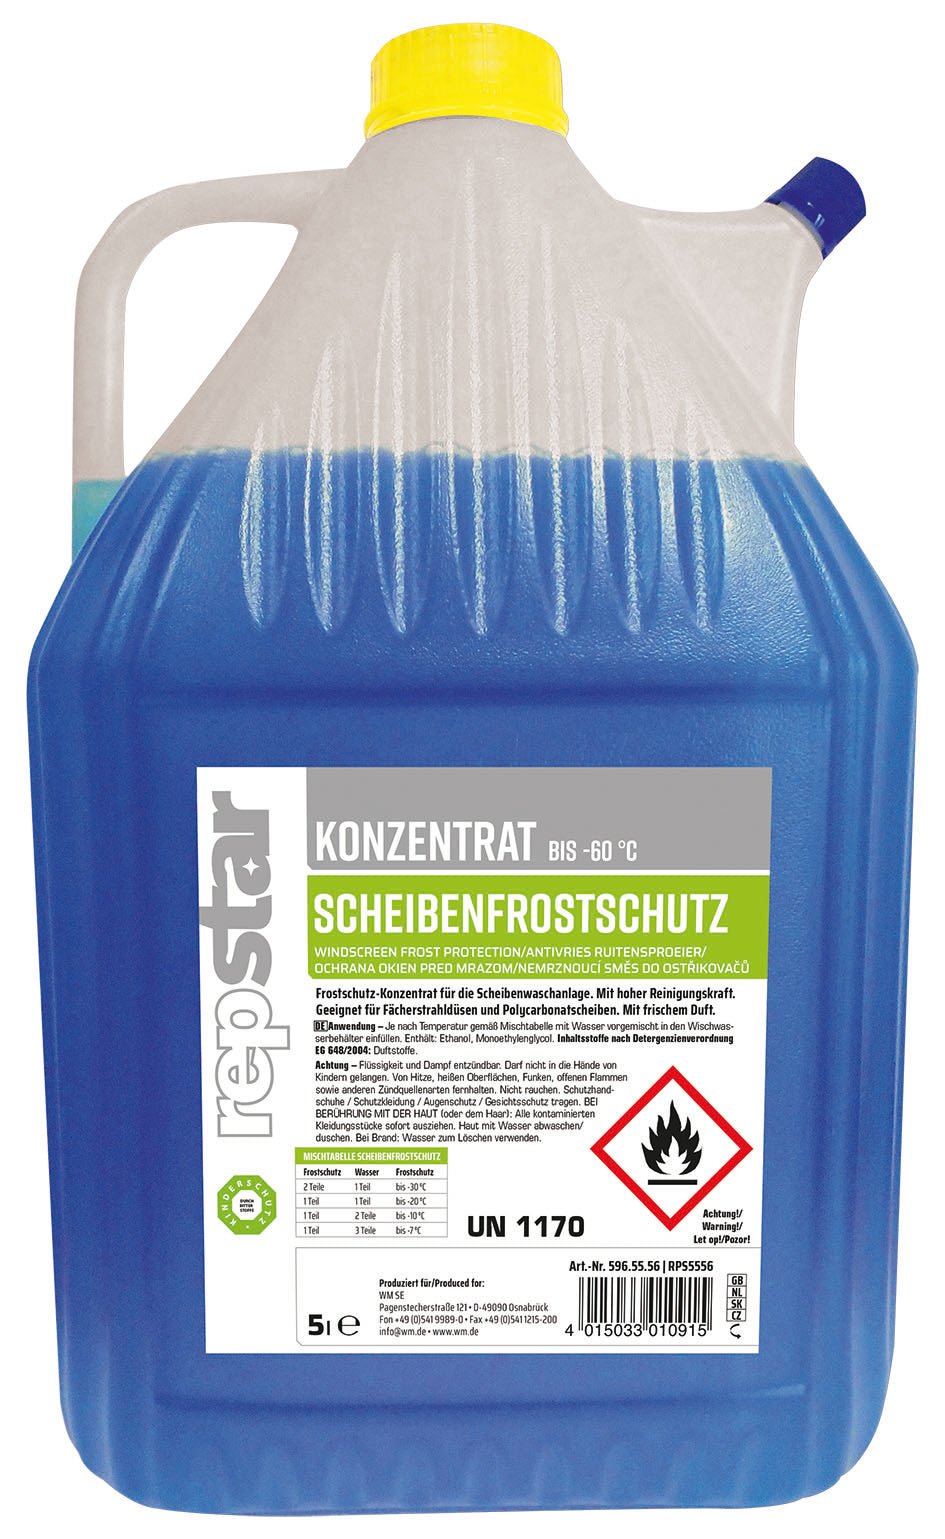 Repstar Scheibenfrostschutz Antifrost Konzentrat - Saar-Pfalz Handel